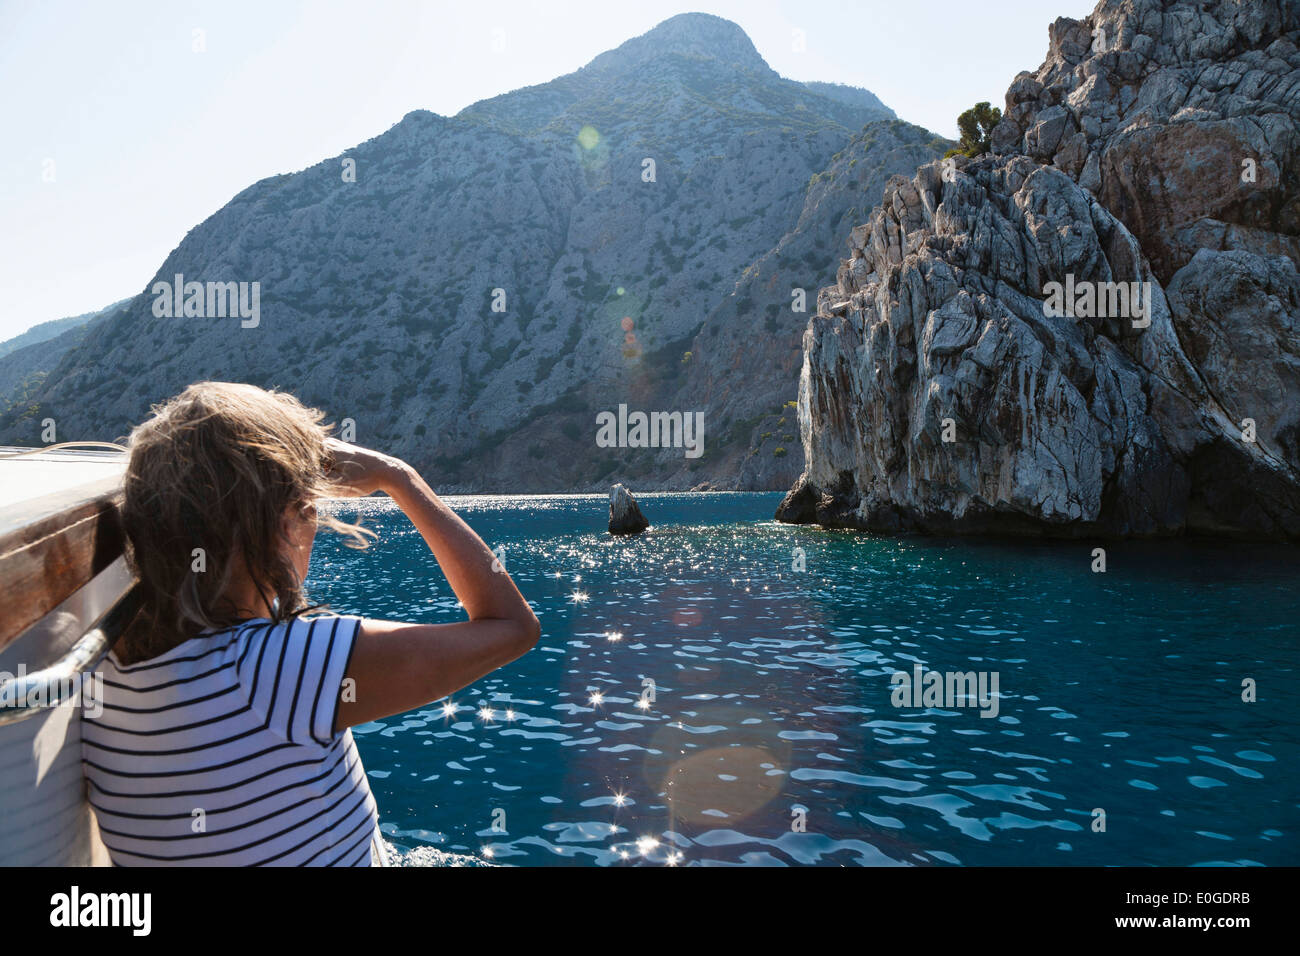 Woman looking towards the coast, sailing along the lycian coast, Ceneviz bay near Cirali, Lycia, Mediterranean Sea, Turkey, Asia Stock Photo